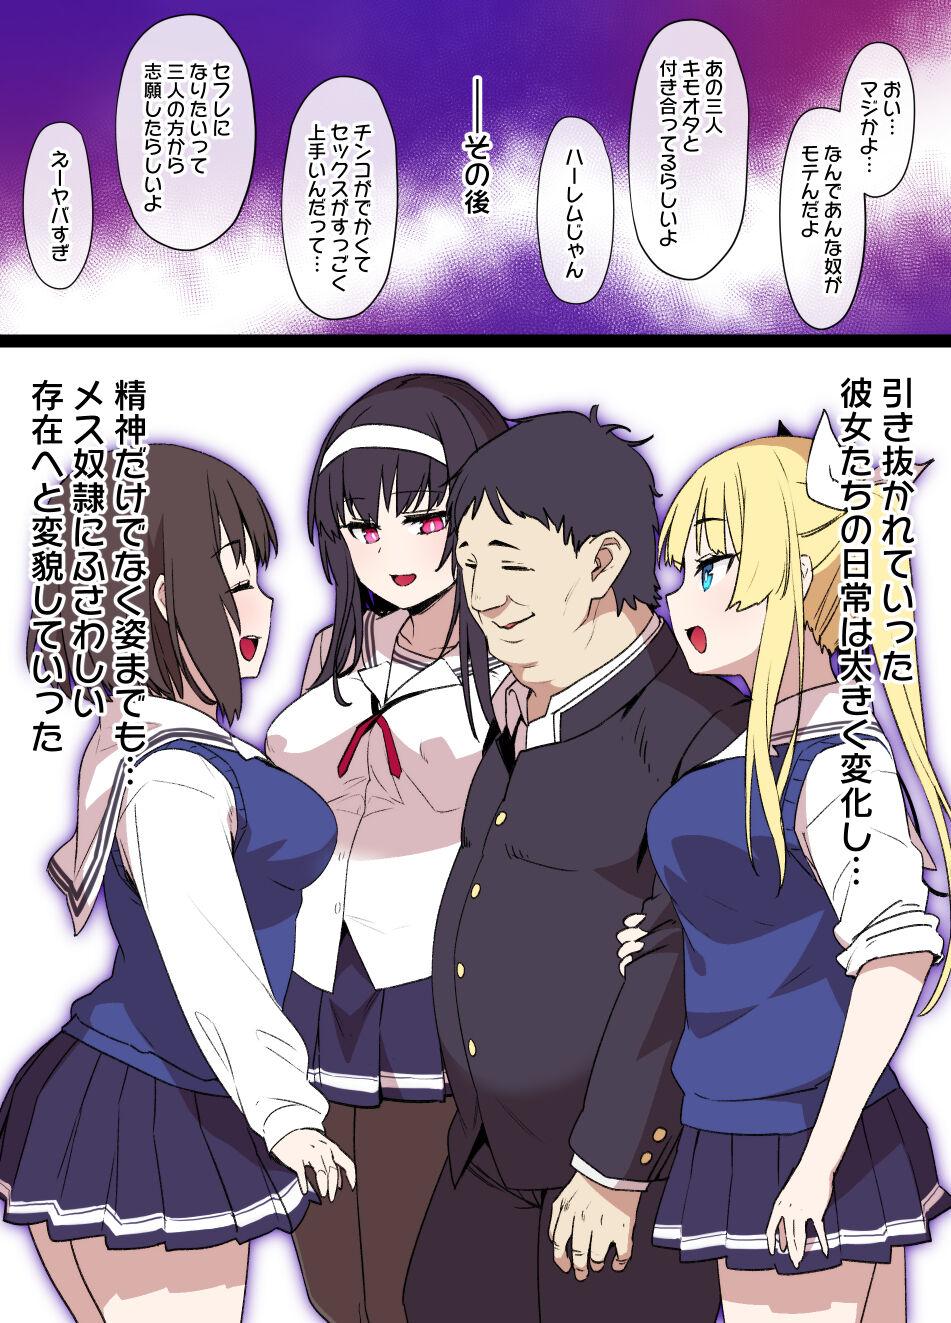 Rico [Kusayarou] Saekano NTR Manga 16P - Saimin Sennou & Bitch-ka (Saenai Heroine no Sodatekata) - Saenai heroine no sodatekata Banging - Page 10